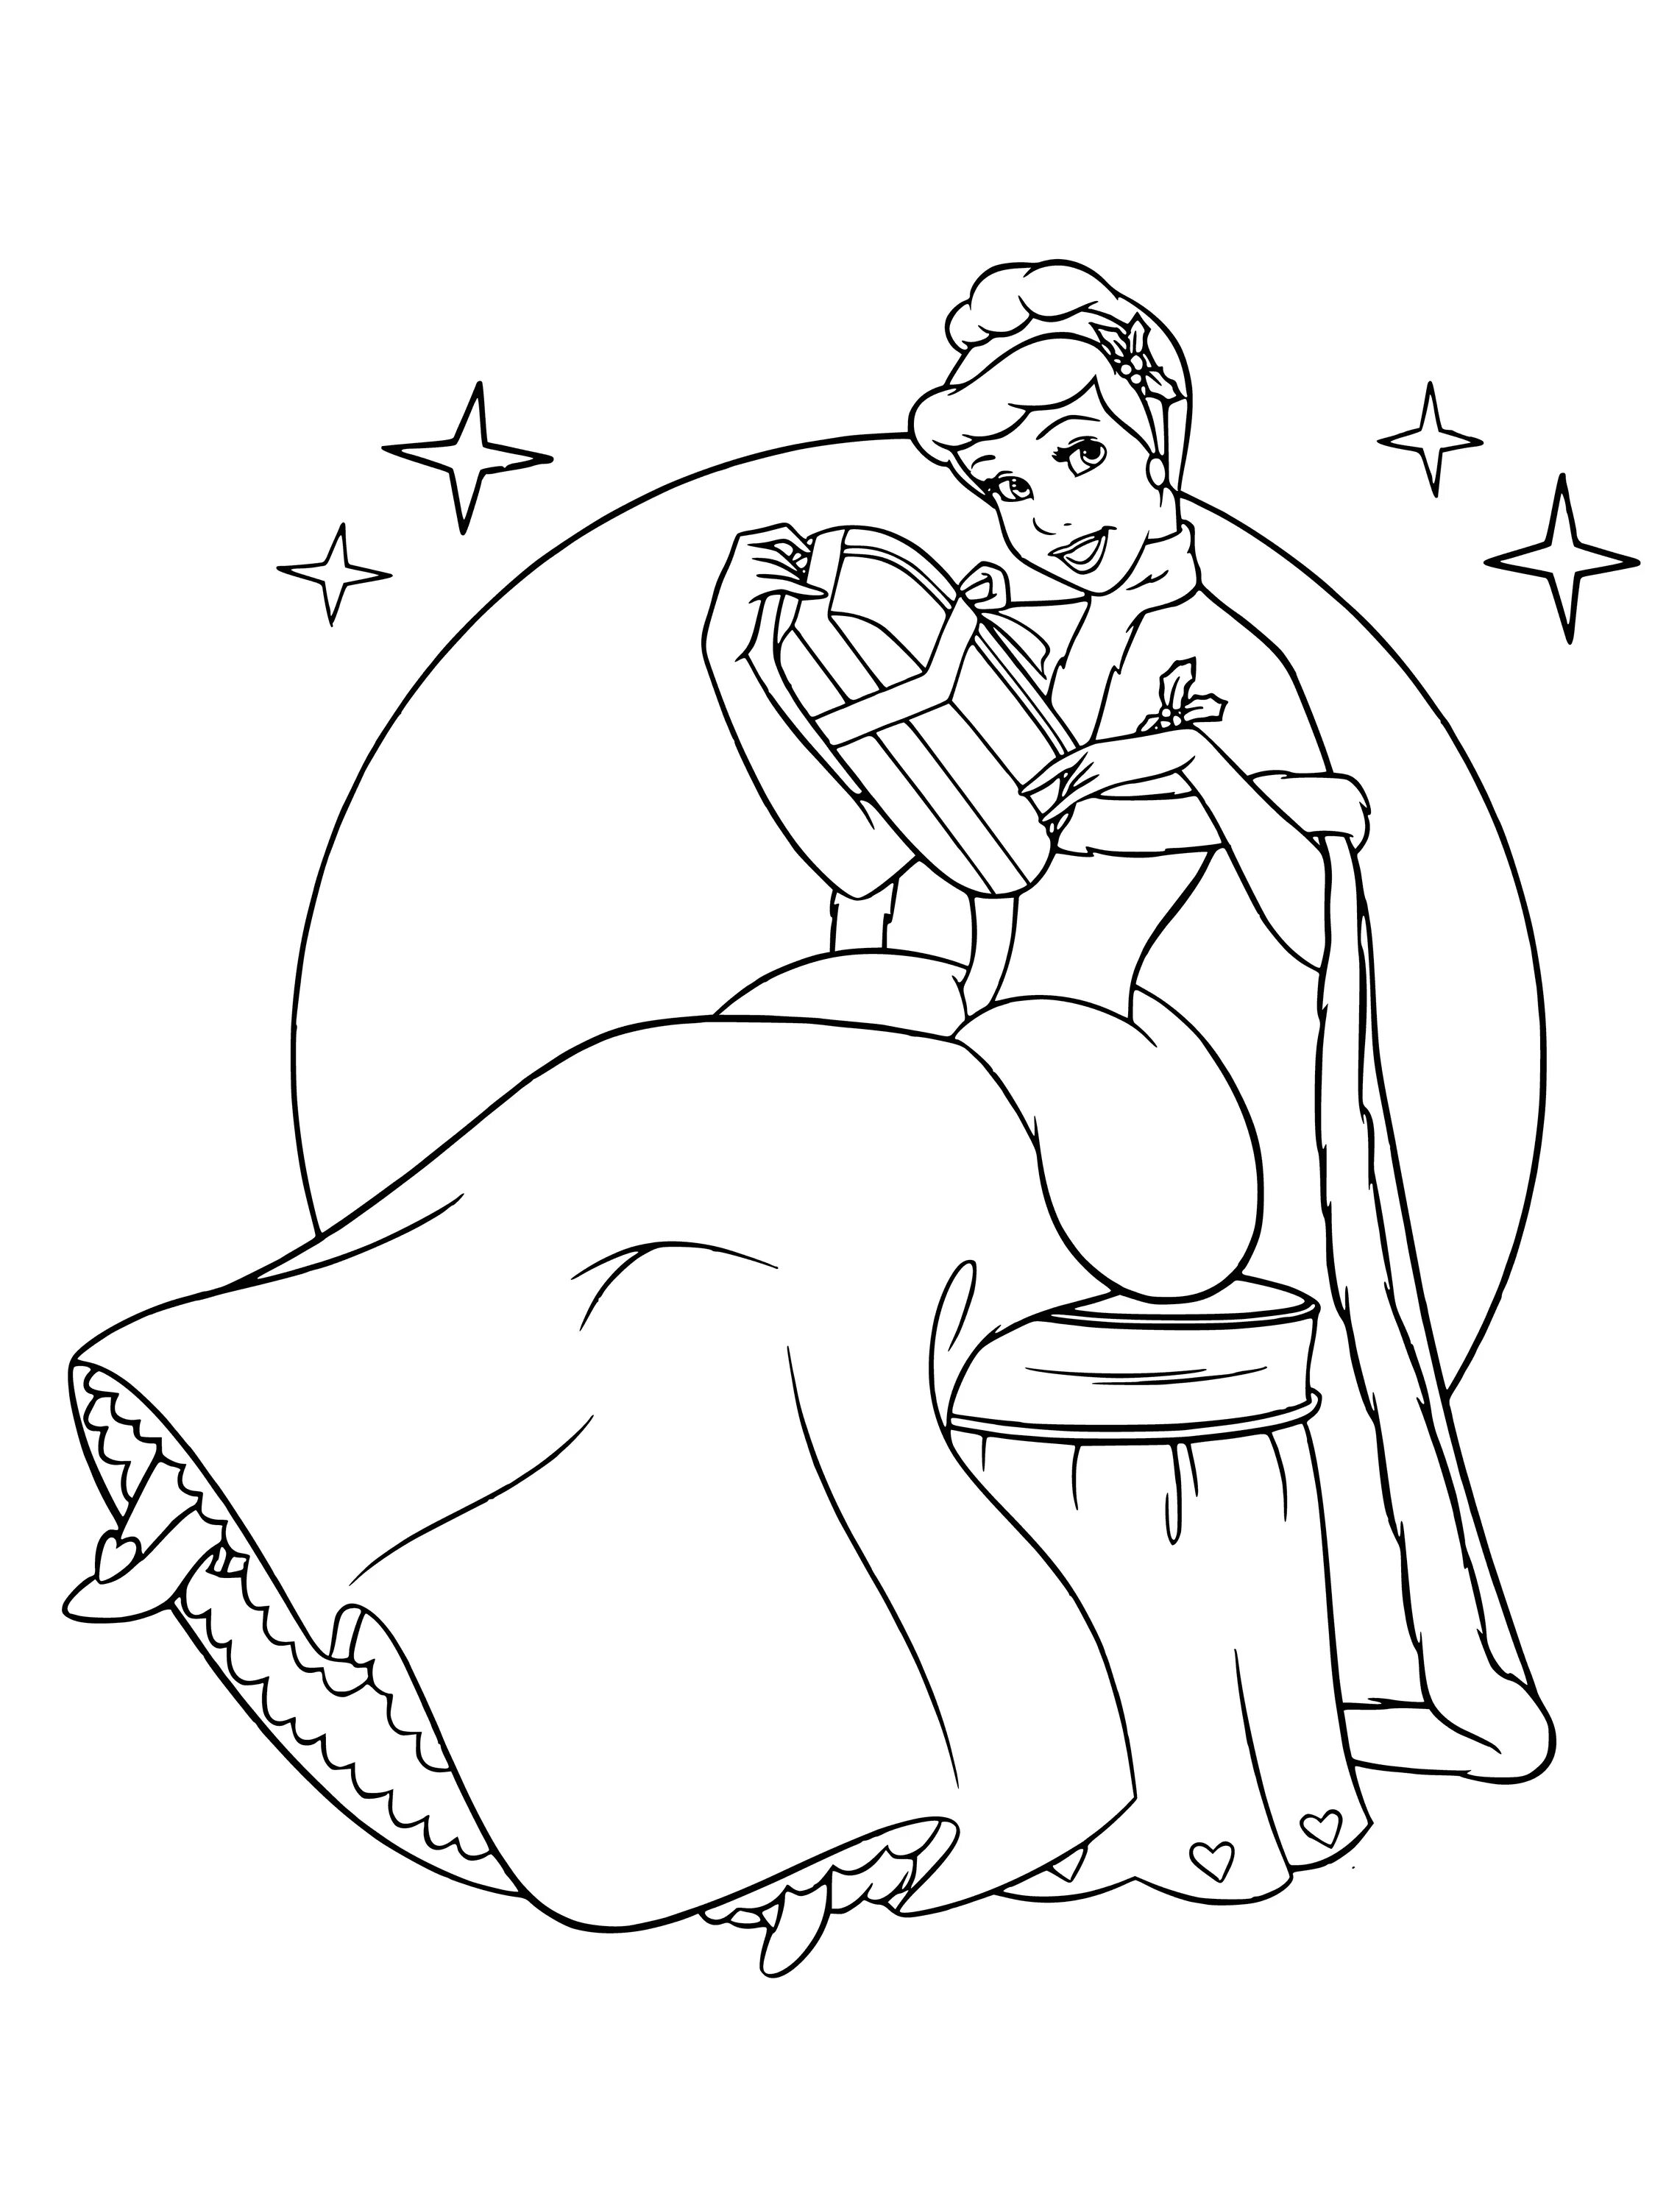 Cinderella disney coloring book